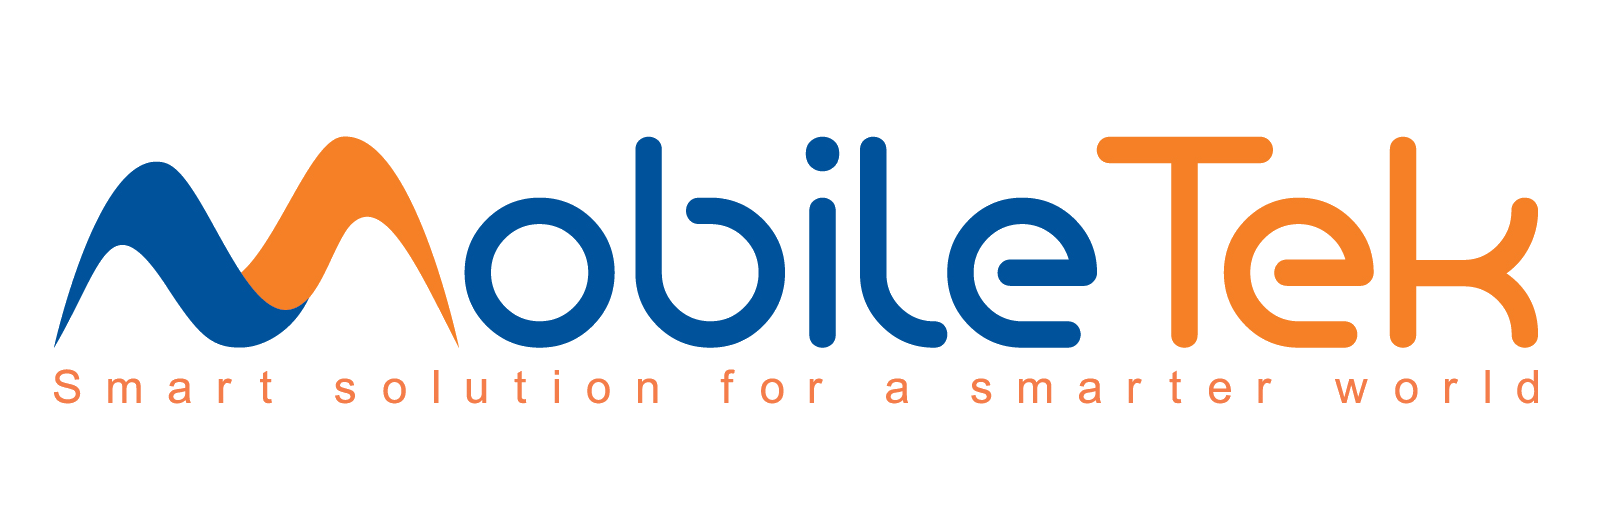 MobileTek